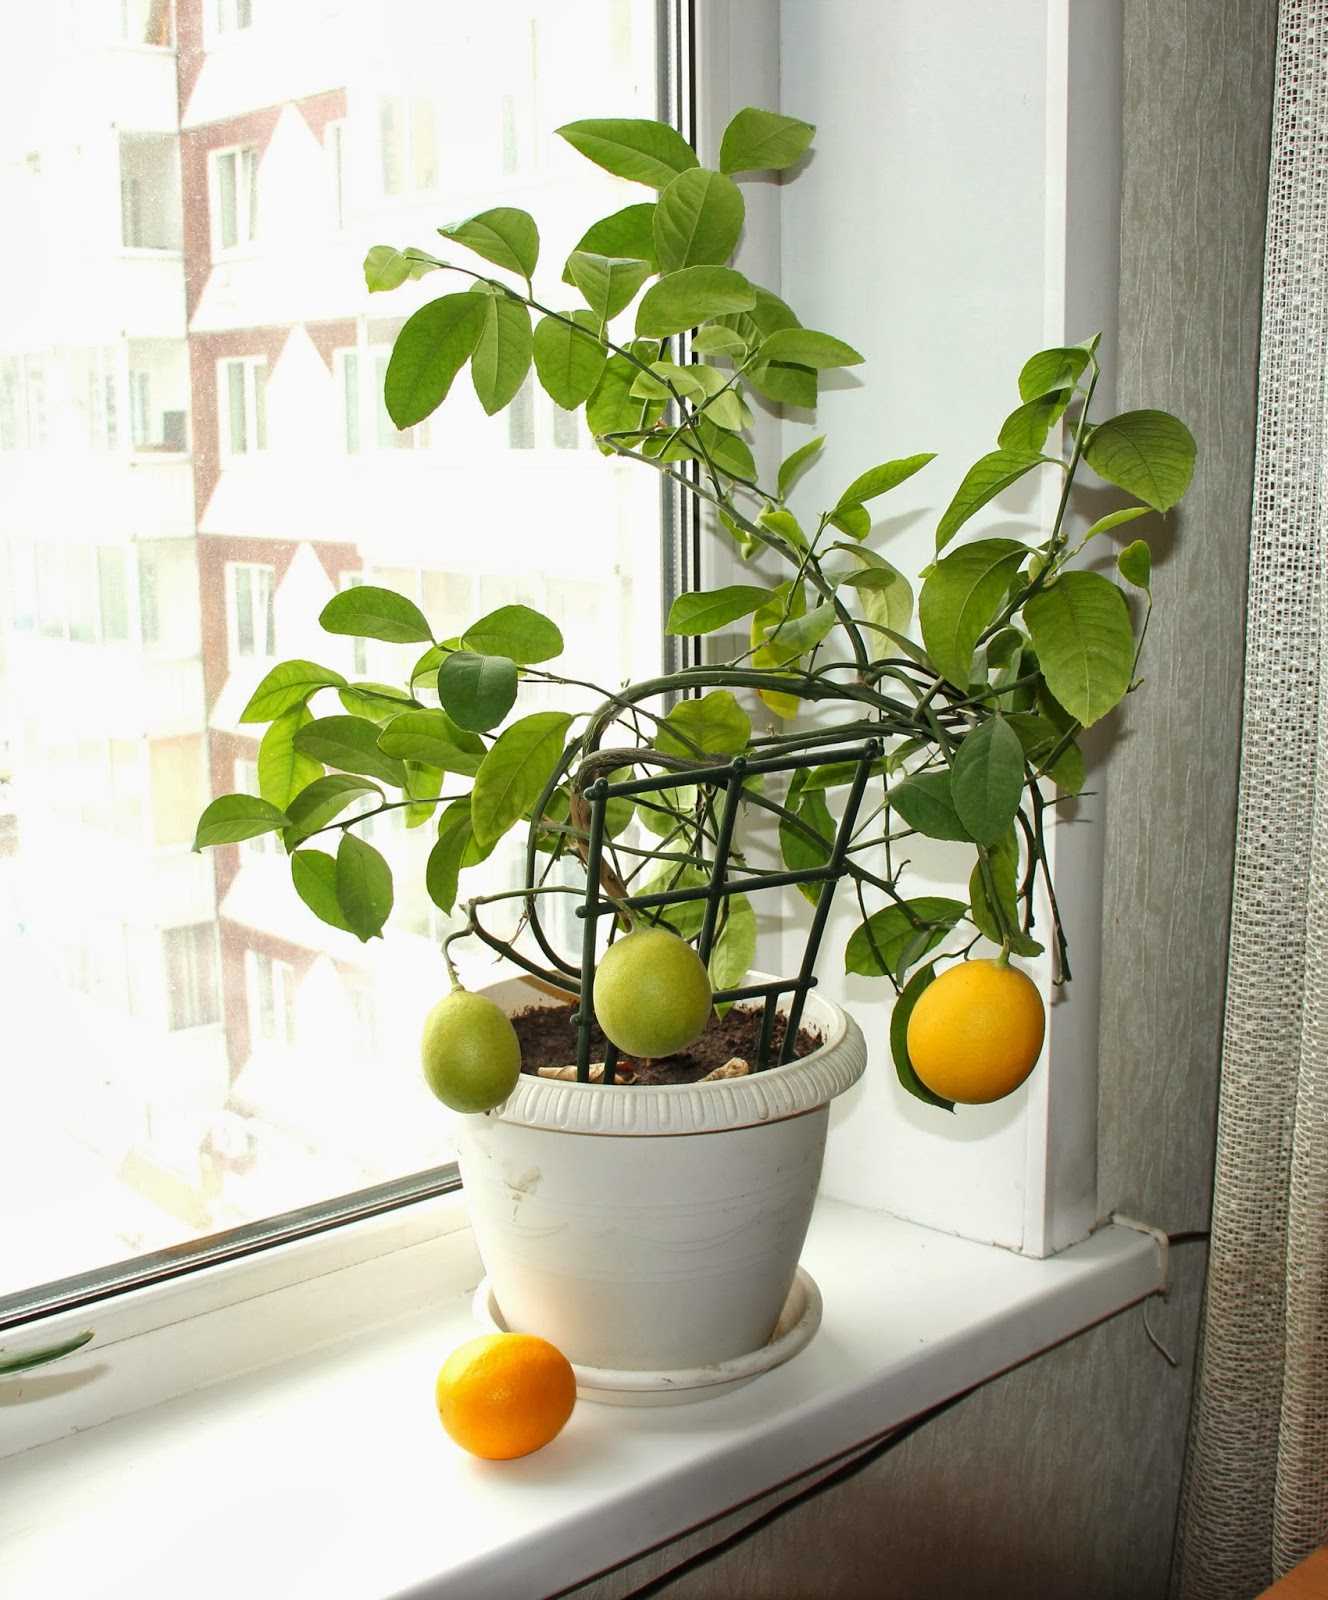 Почему у комнатного лимона желтеют листья, что делать, если они меняют цвет по краям, опадают, каков нужен уход в домашних условиях, чтобы растение их не сбрасывало?дача эксперт